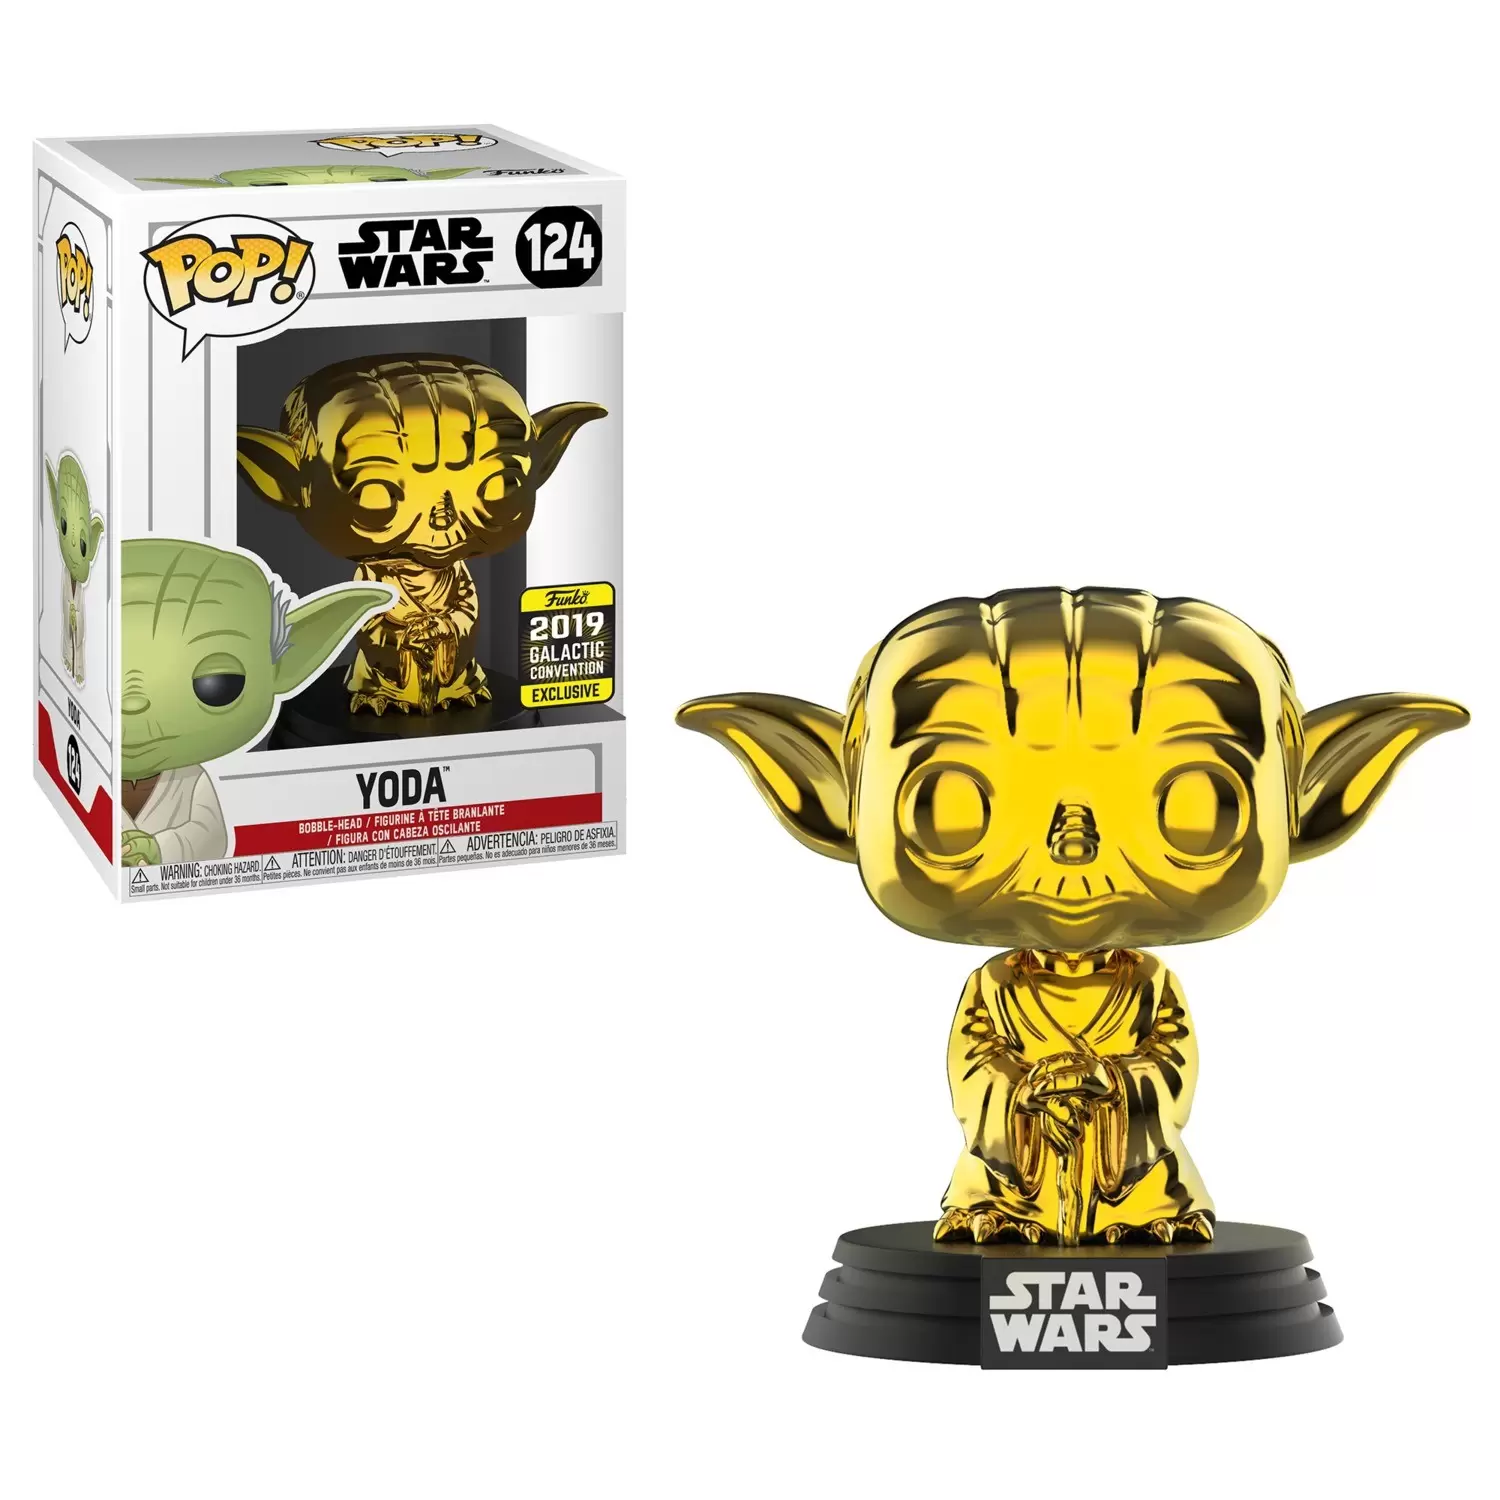 POP! Star Wars - Star Wars - Yoda Gold Chrome